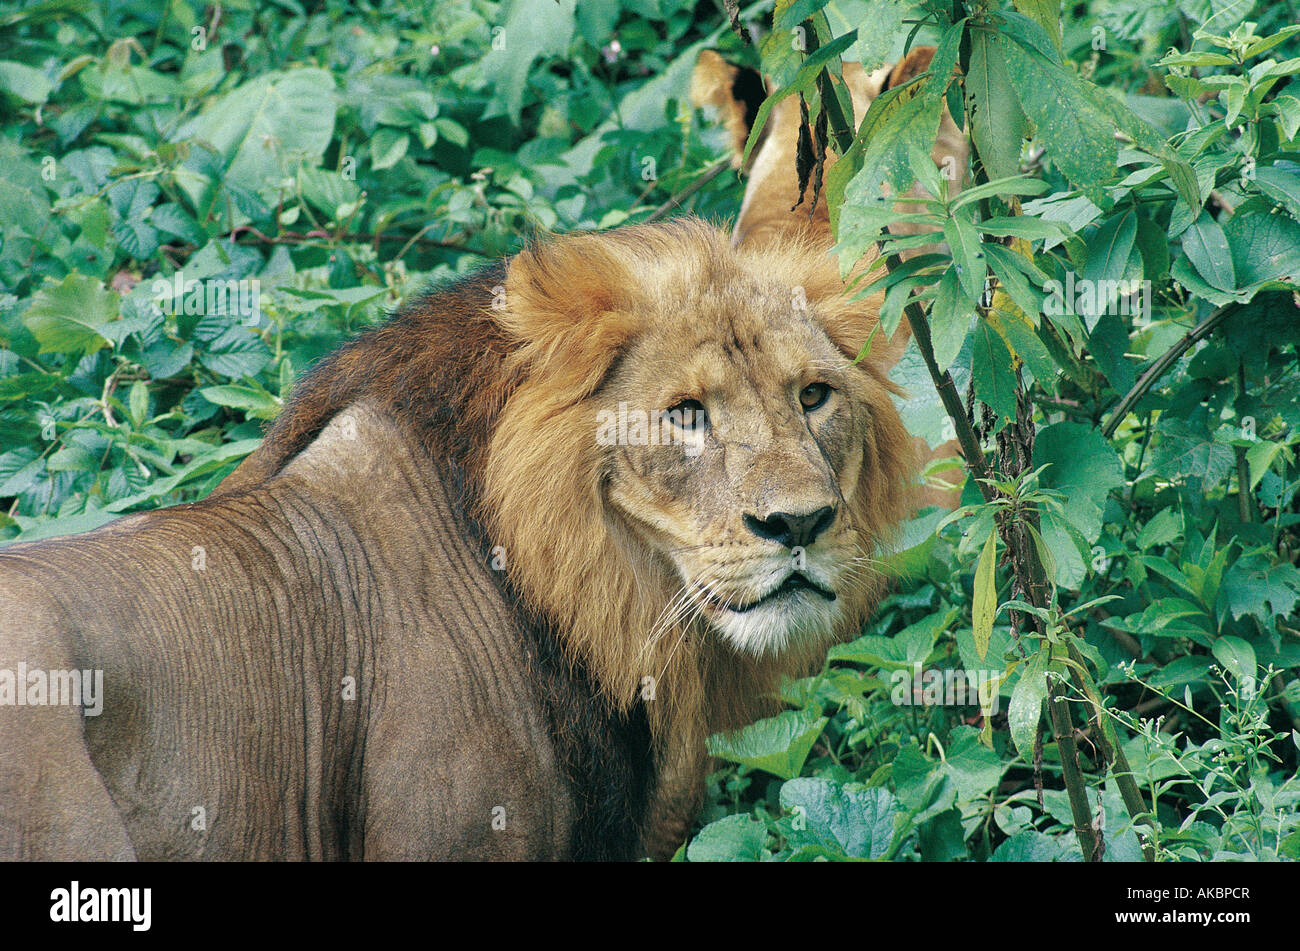 Close up portrait of mature male lion en forêt Harenna Bale Mountains National Park Afrique Ethiopie Banque D'Images